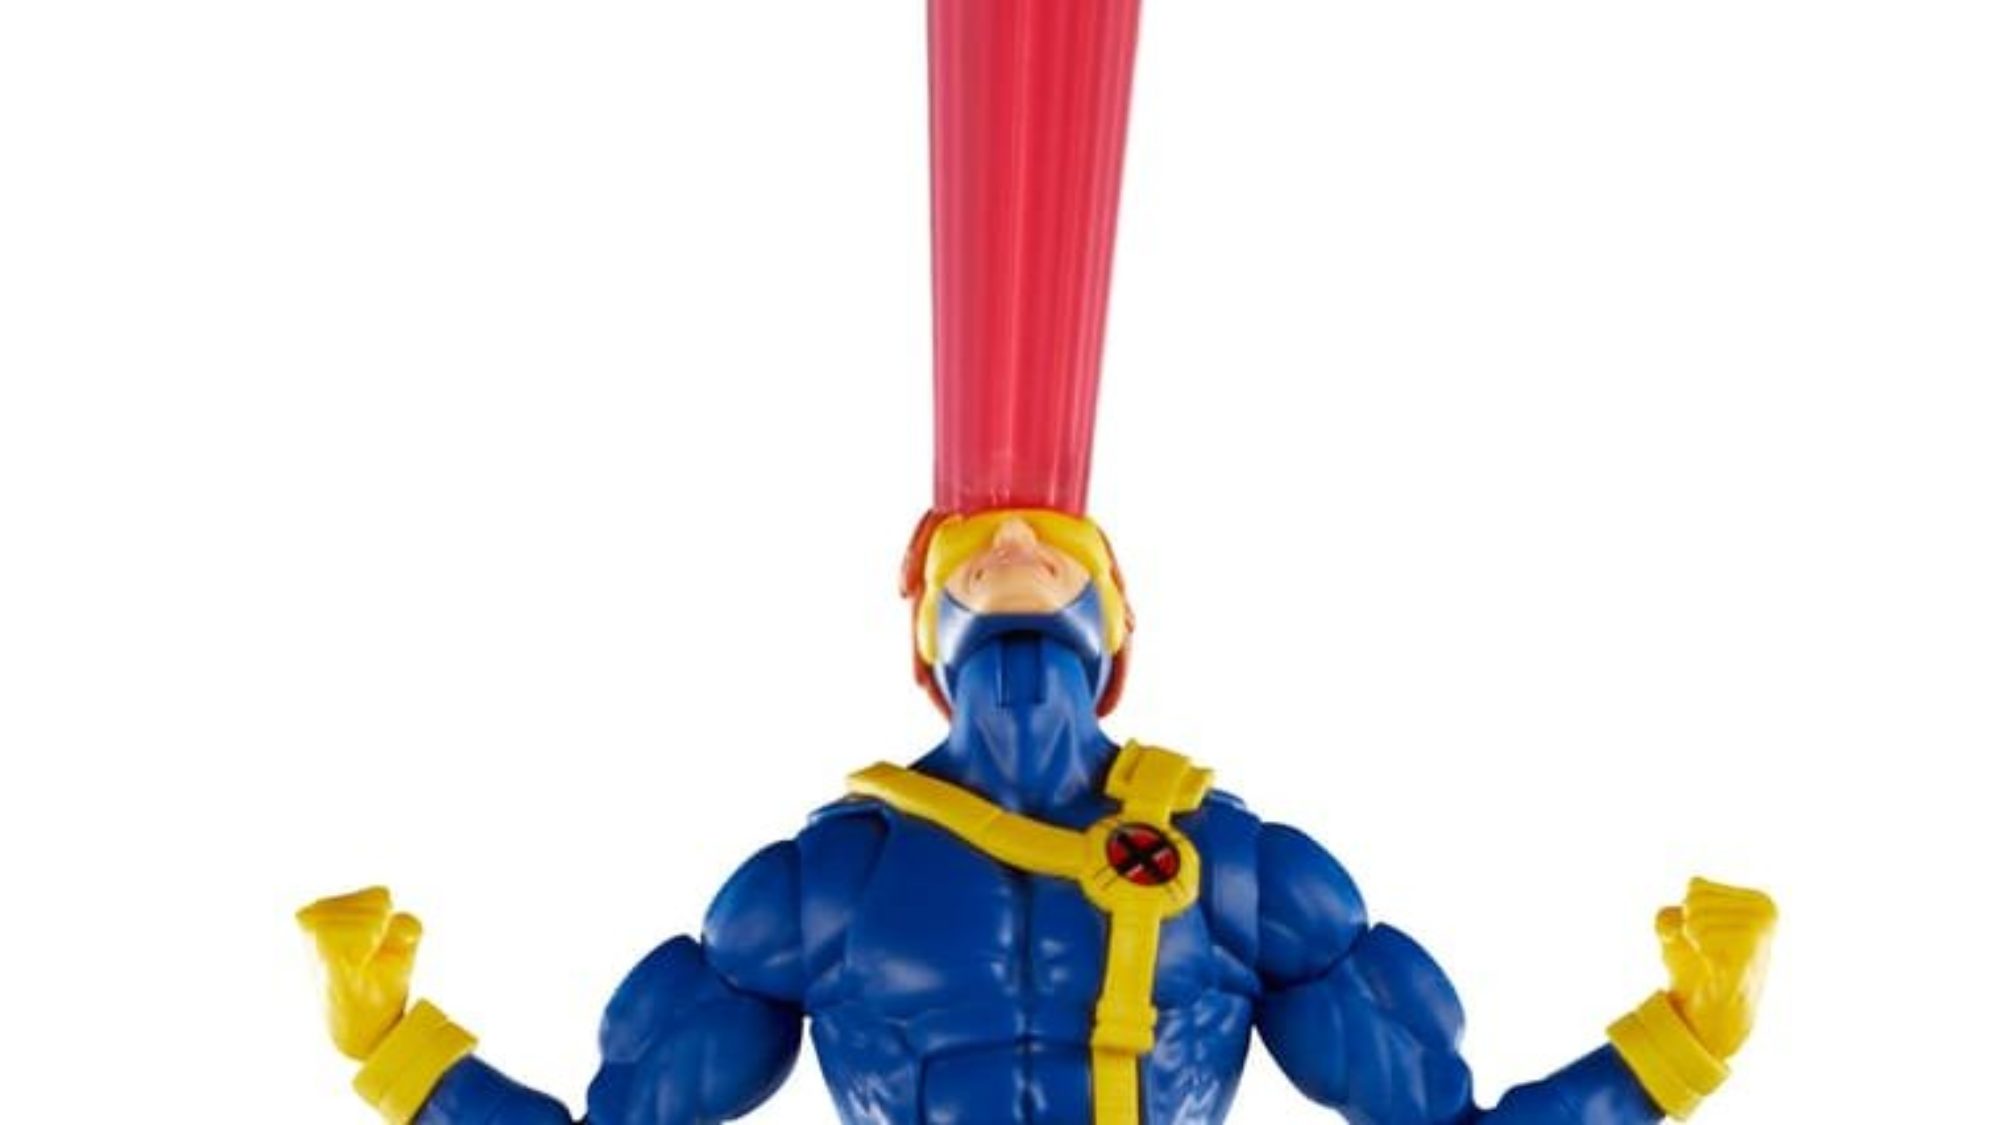 Marvel Legends X-Men '97 Action Figures Wave 2 Unveiled, x men 97 